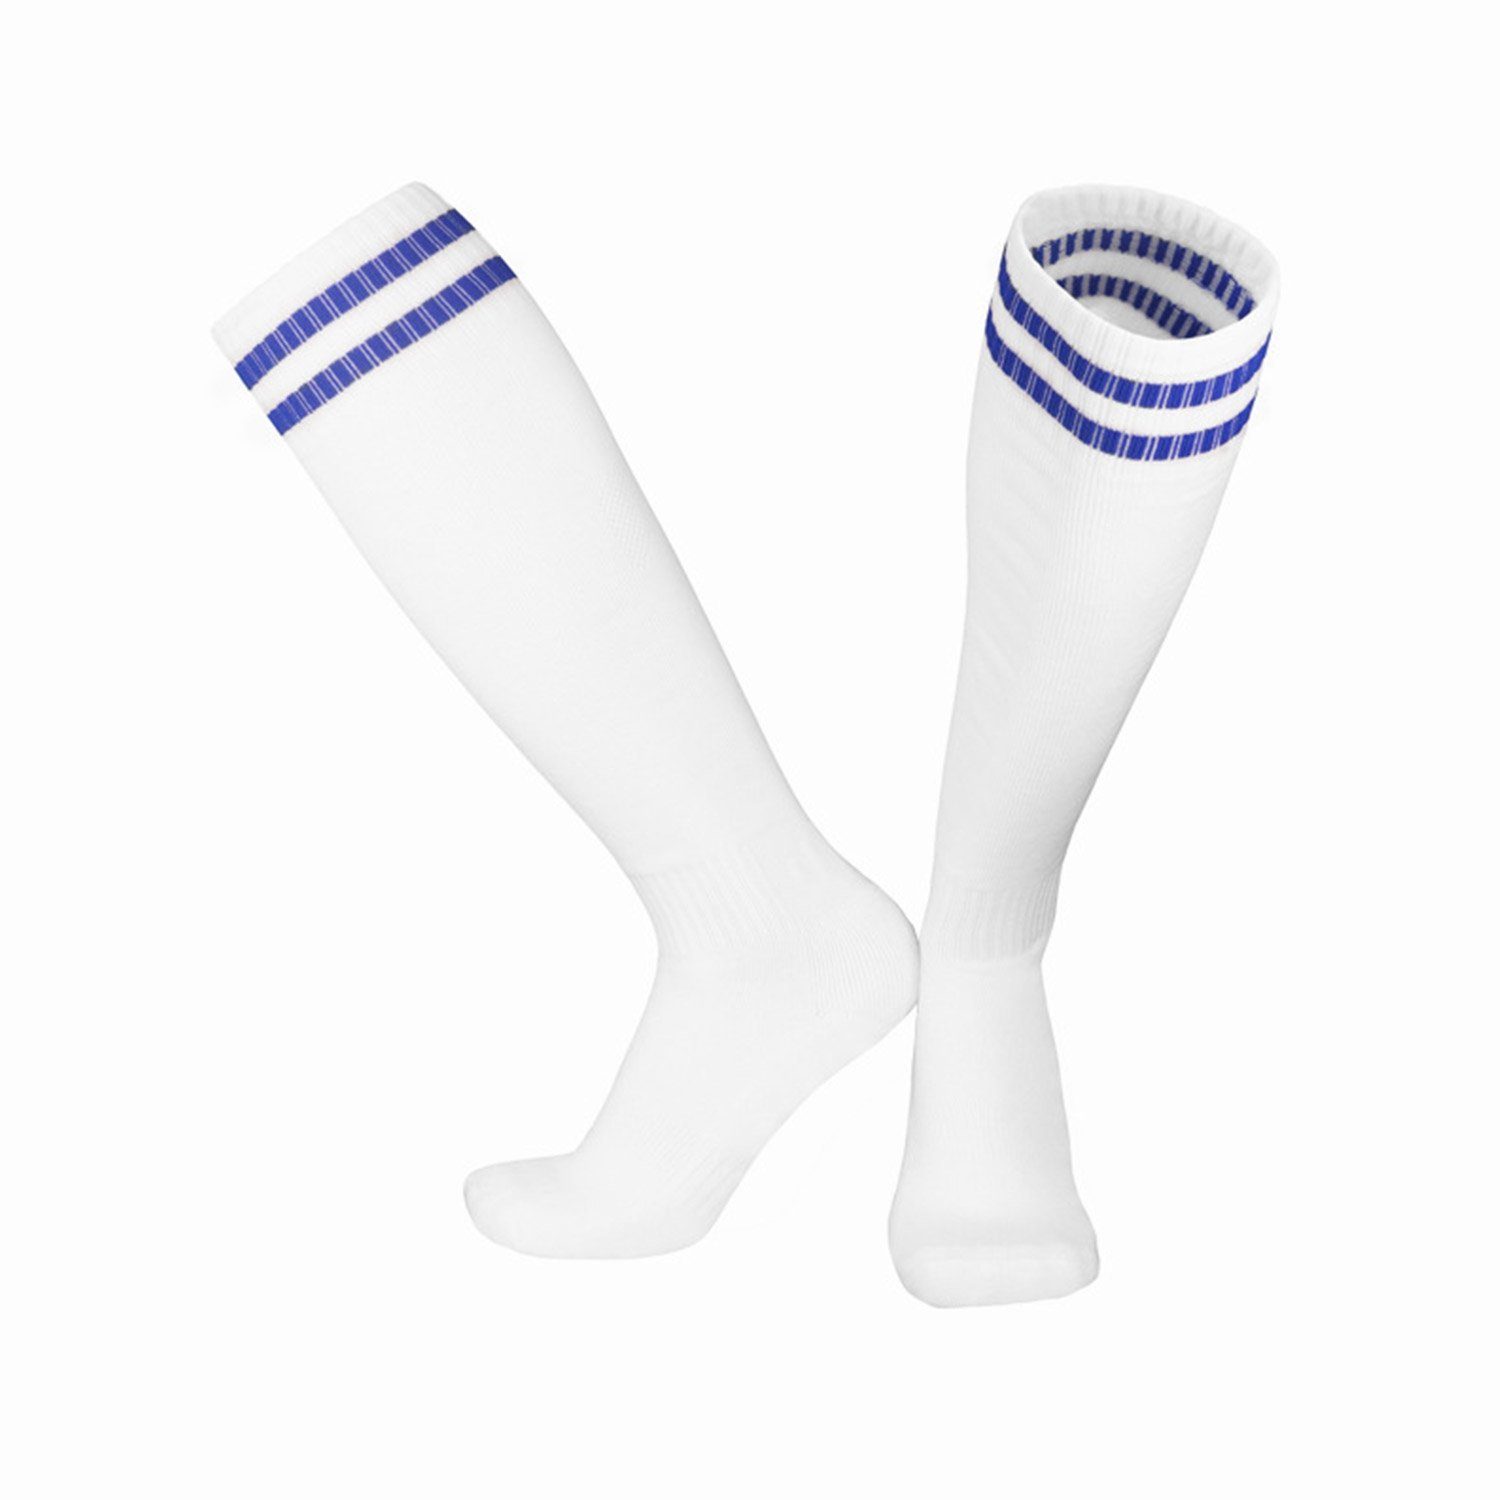 MAGICSHE Sportsocken Kinderfußball -Socken Socken Bewegung Weiß2 Laufen Training Erwachsene Fadenfäden Neutral Socken Fußballtraining, für und